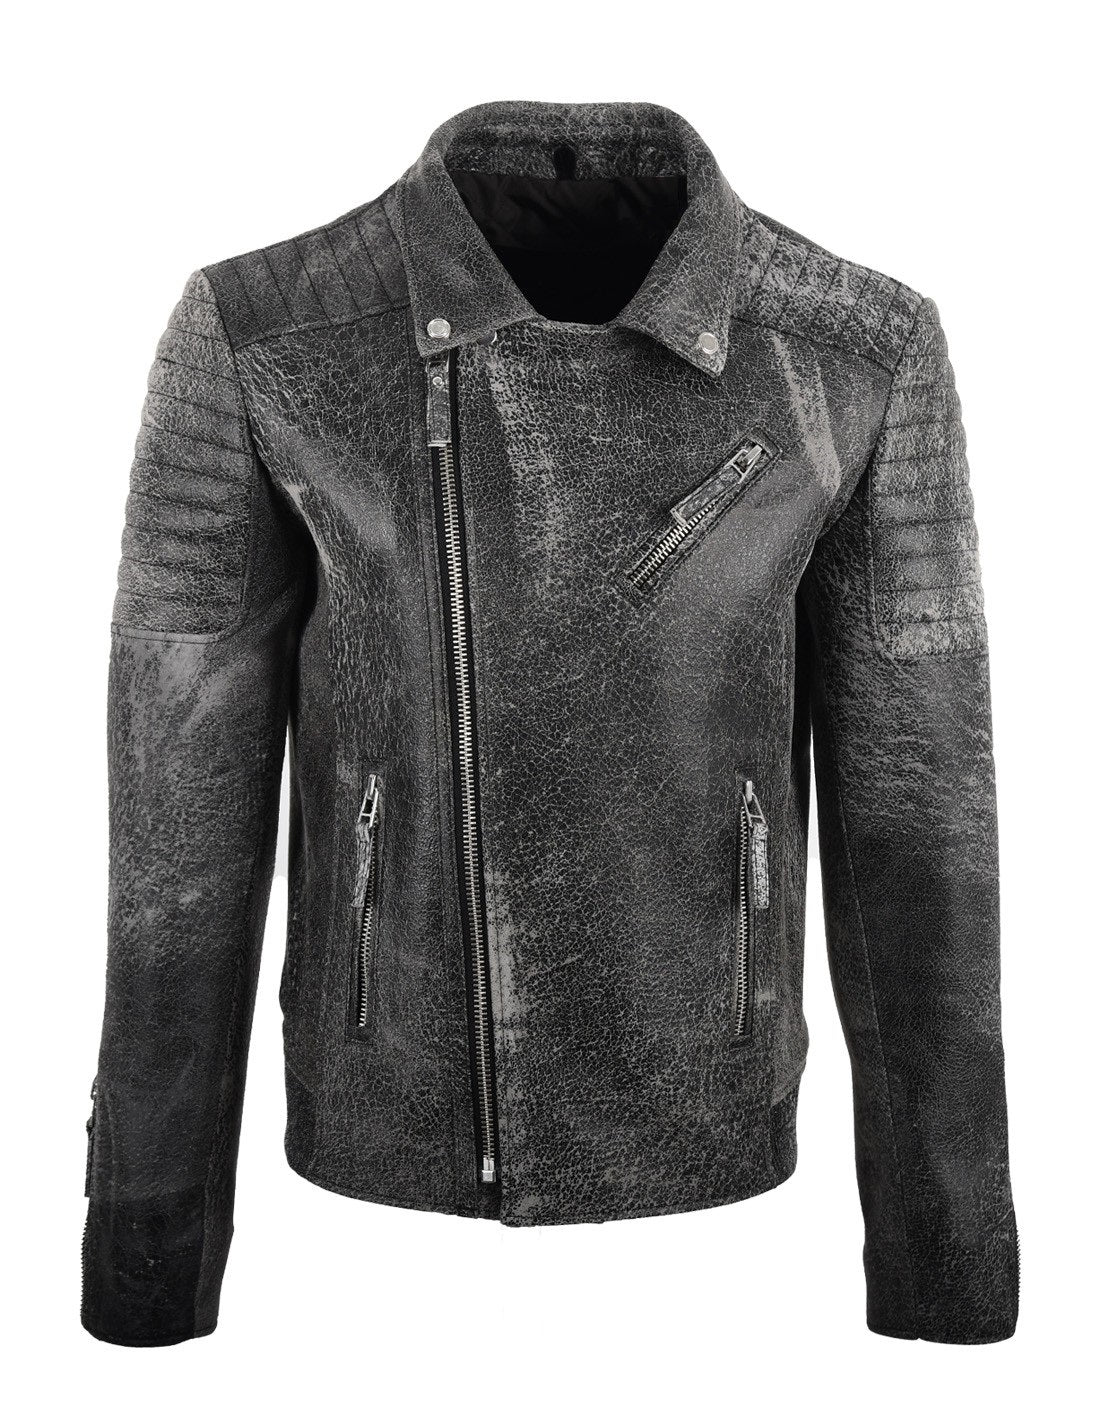 Men's Biker Crackle Style Leather Jacket